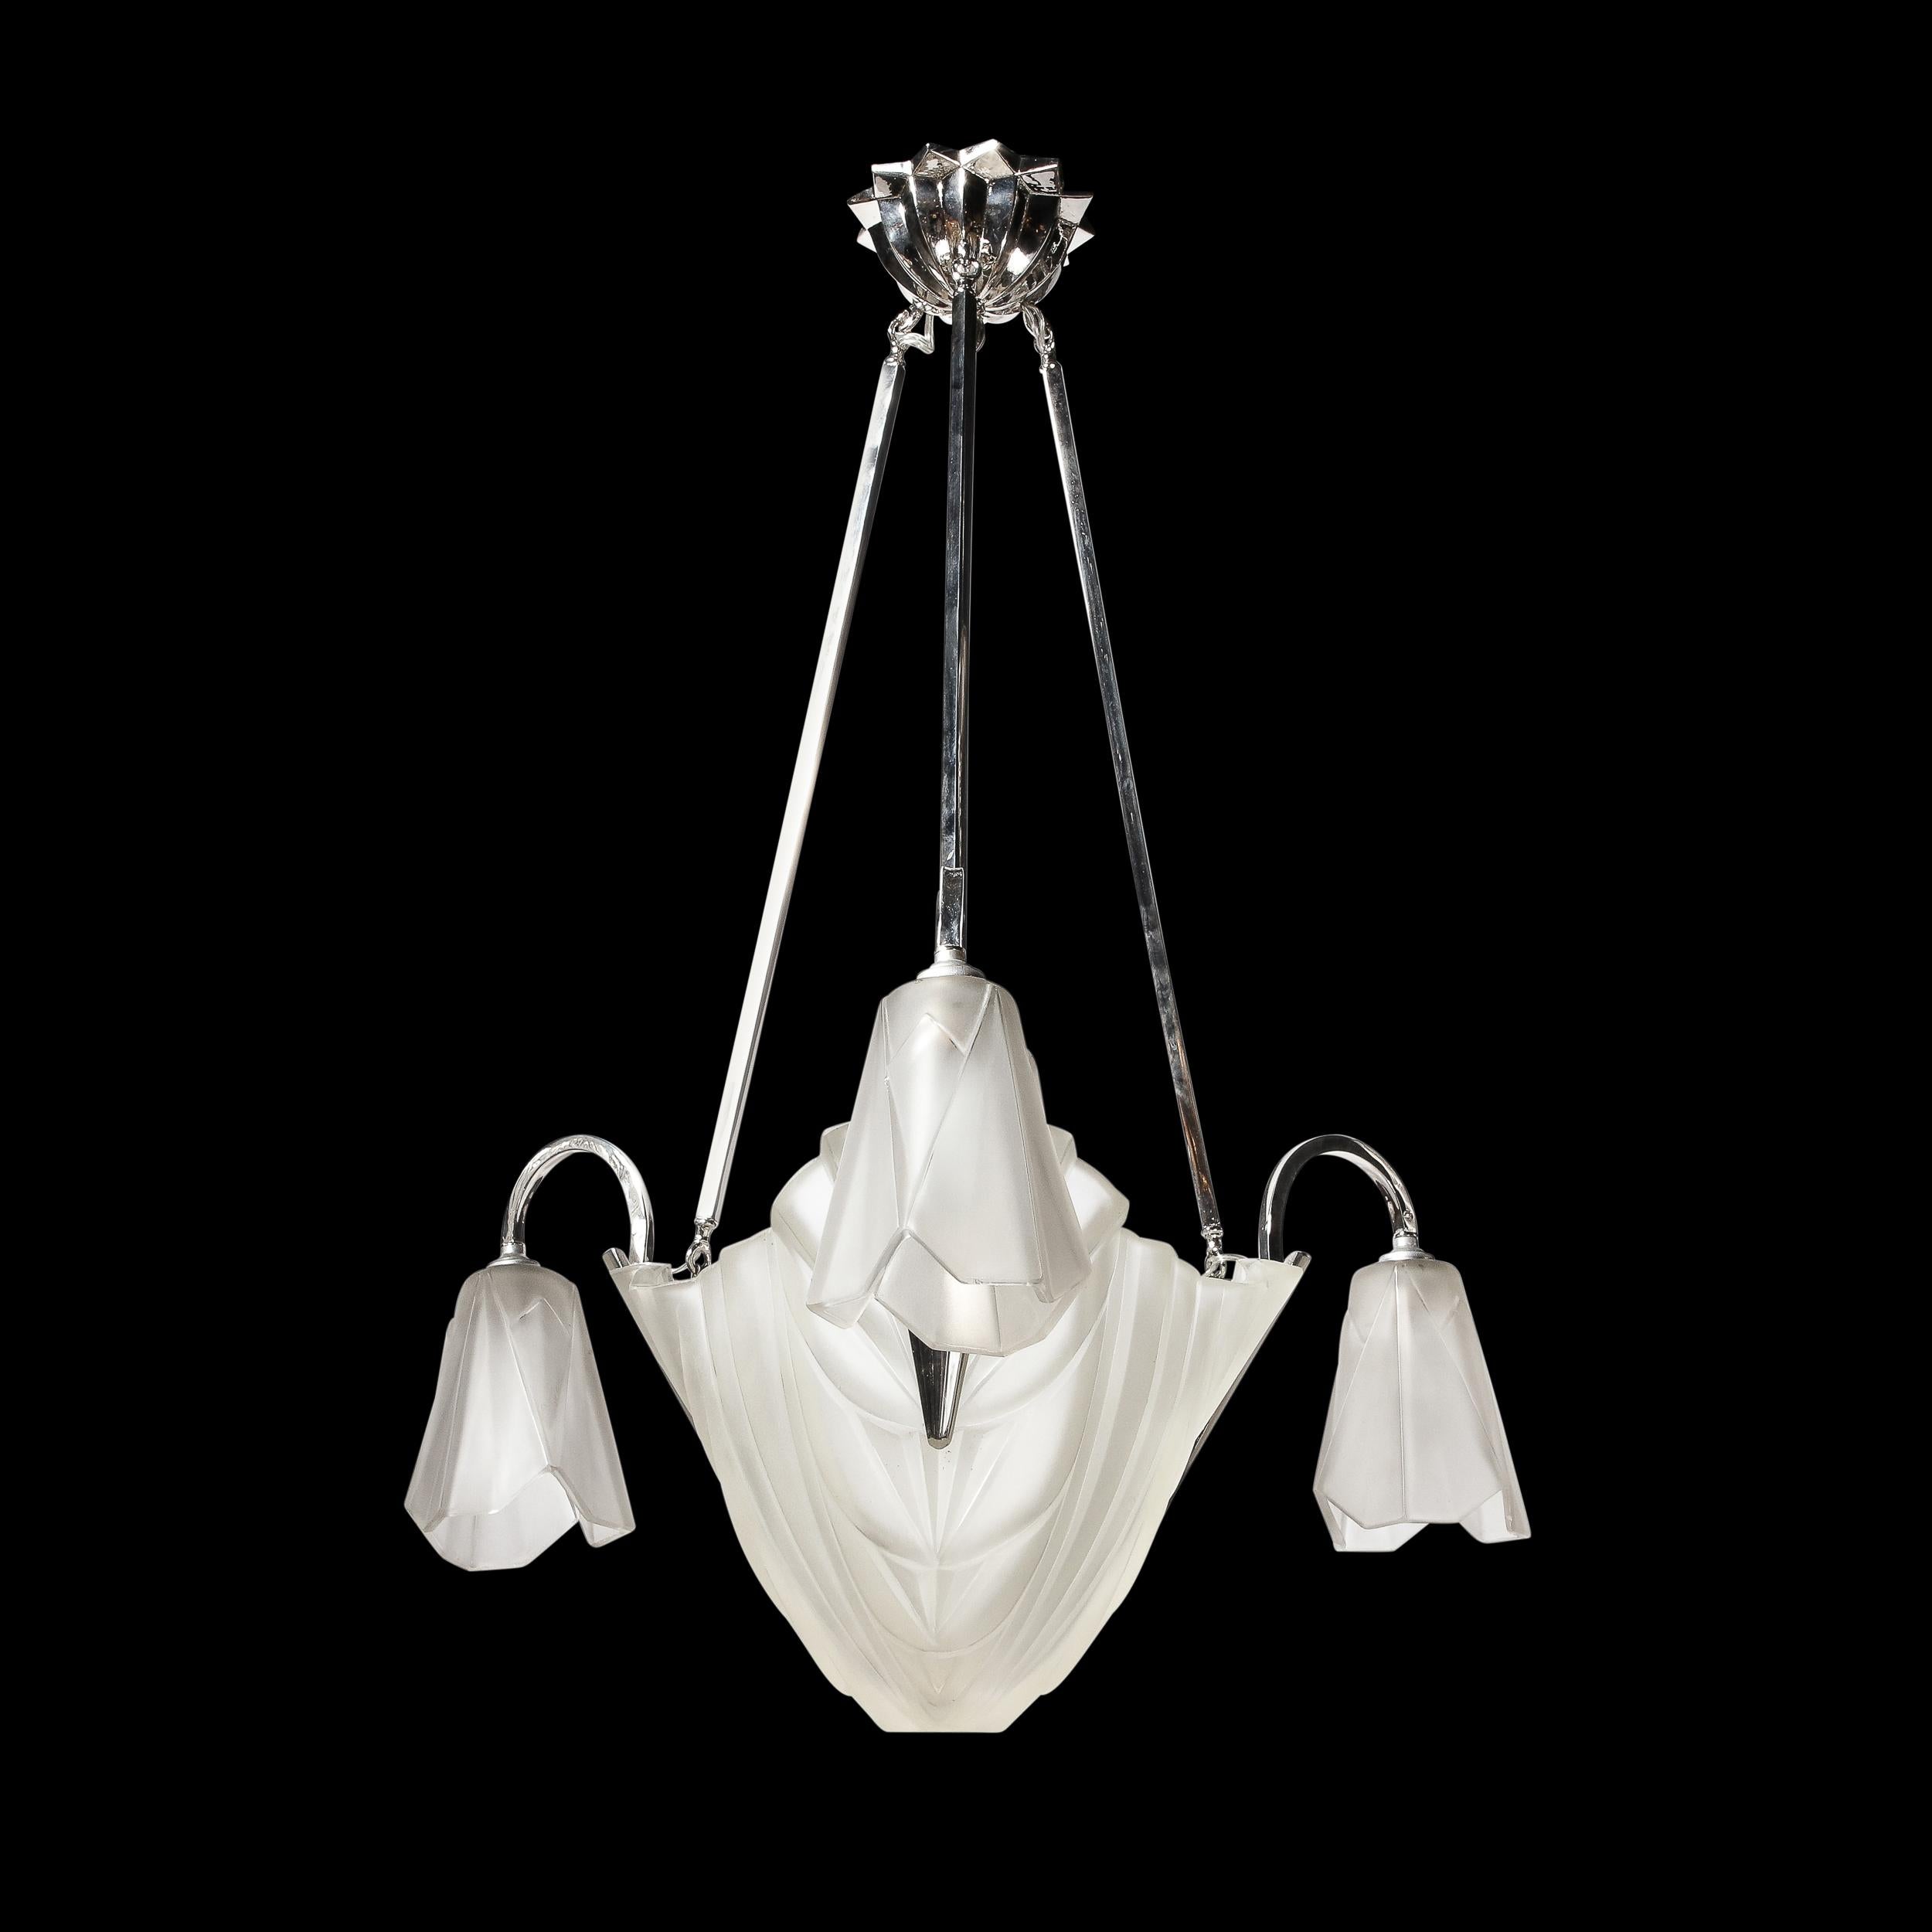 Dieser prächtige Art-Déco-Kronleuchter stammt aus Frankreich, CIRCA 1920. Er ist aus mattiertem, geformtem Glas gefertigt und mit geschwungenen, geometrischen Wolkenkratzer-Details auf den zentralen und hängenden Glasschirmen verziert. Der Baldachin